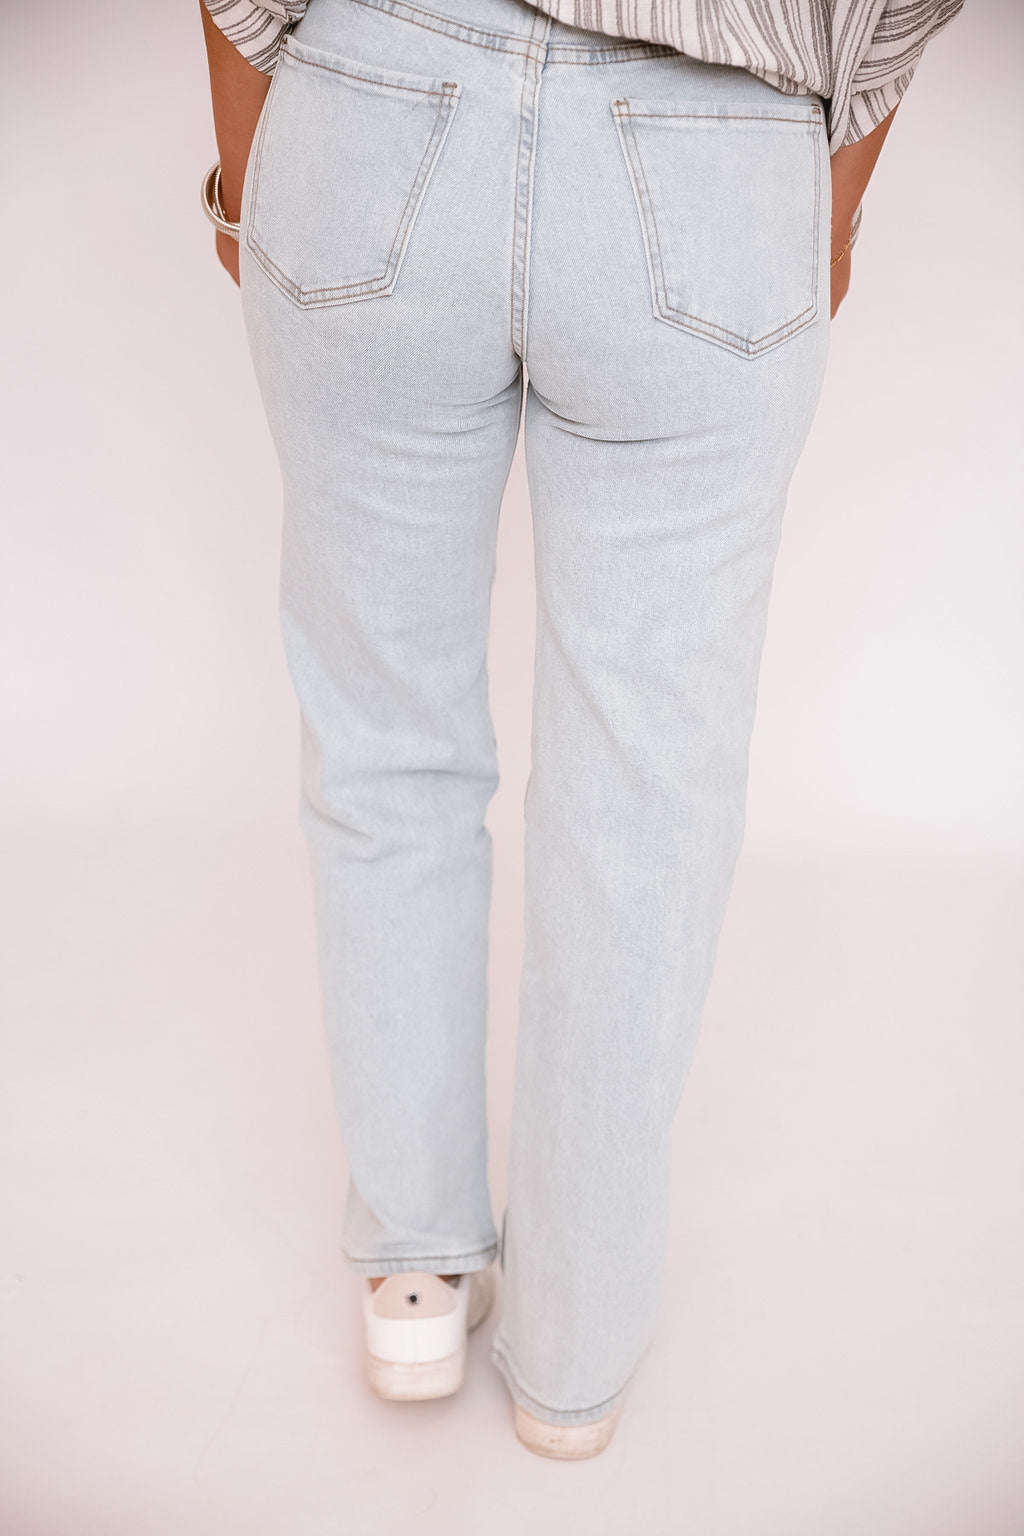 Arriana’s rhinestone stretch jeans